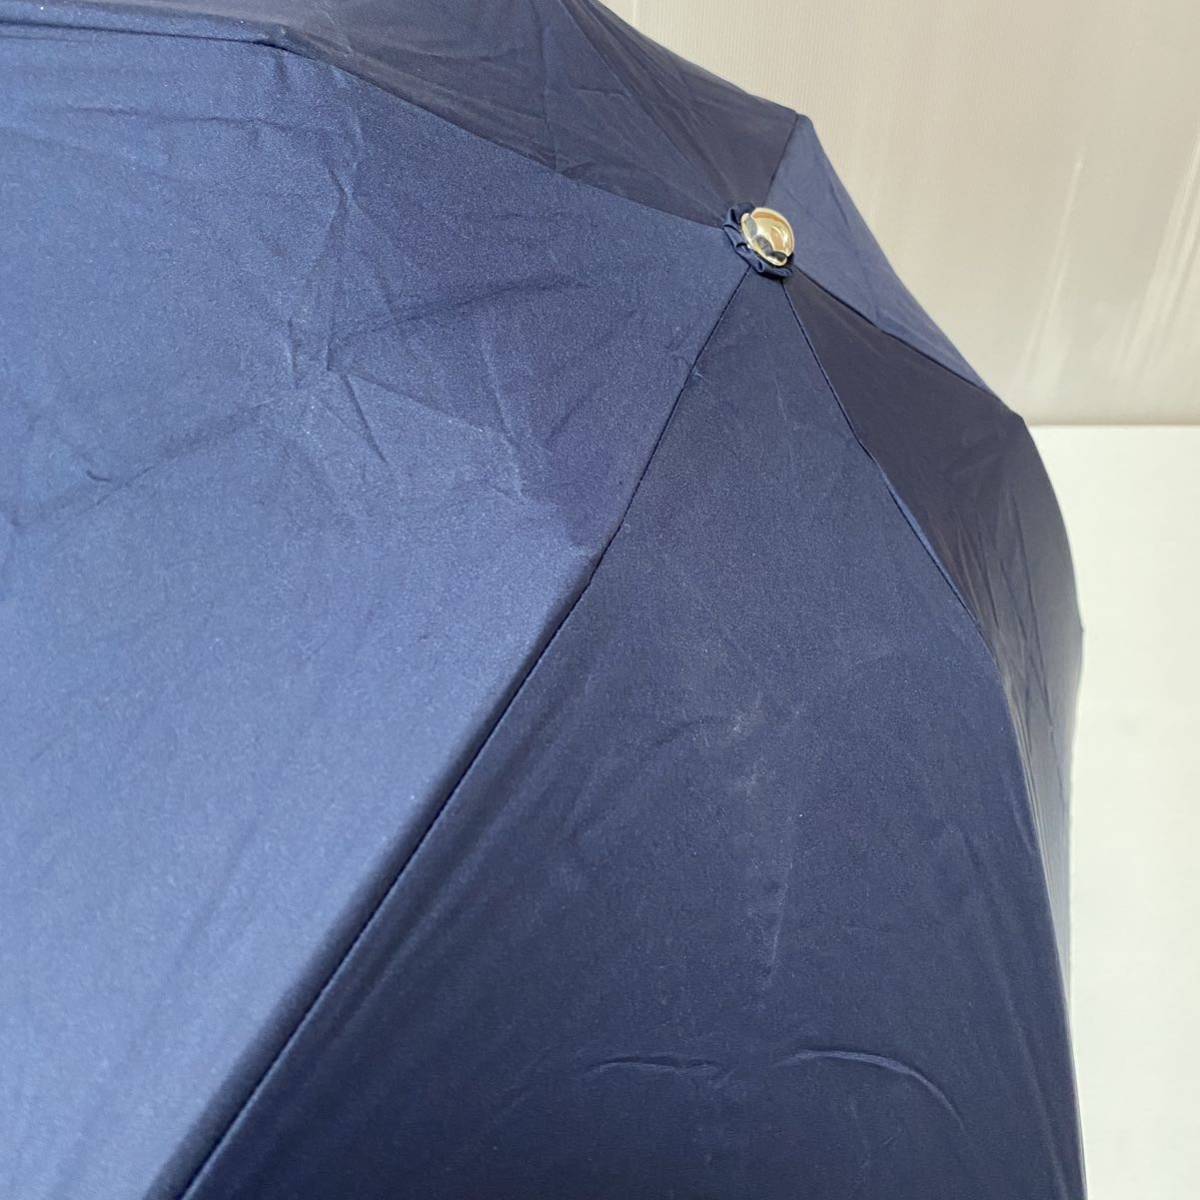 u230524 LANVIN Lanvin folding umbrella . rain combined use umbrella parasol 